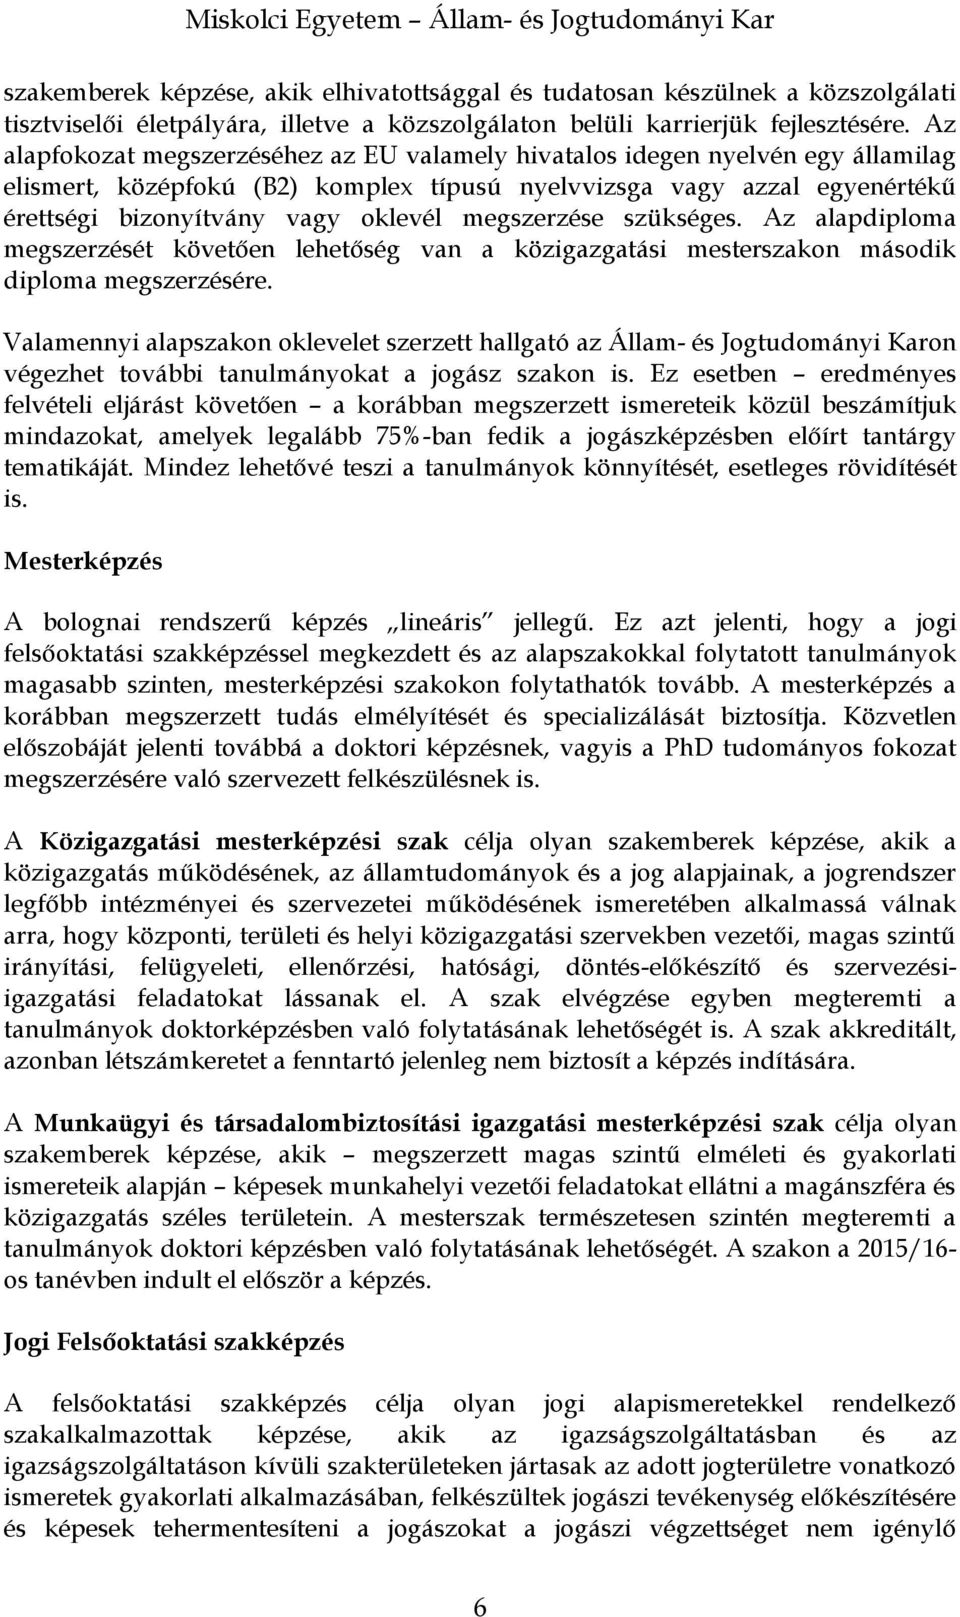 Miskolci Egyetem. Állam- és Jogtudományi Kar - PDF Free Download